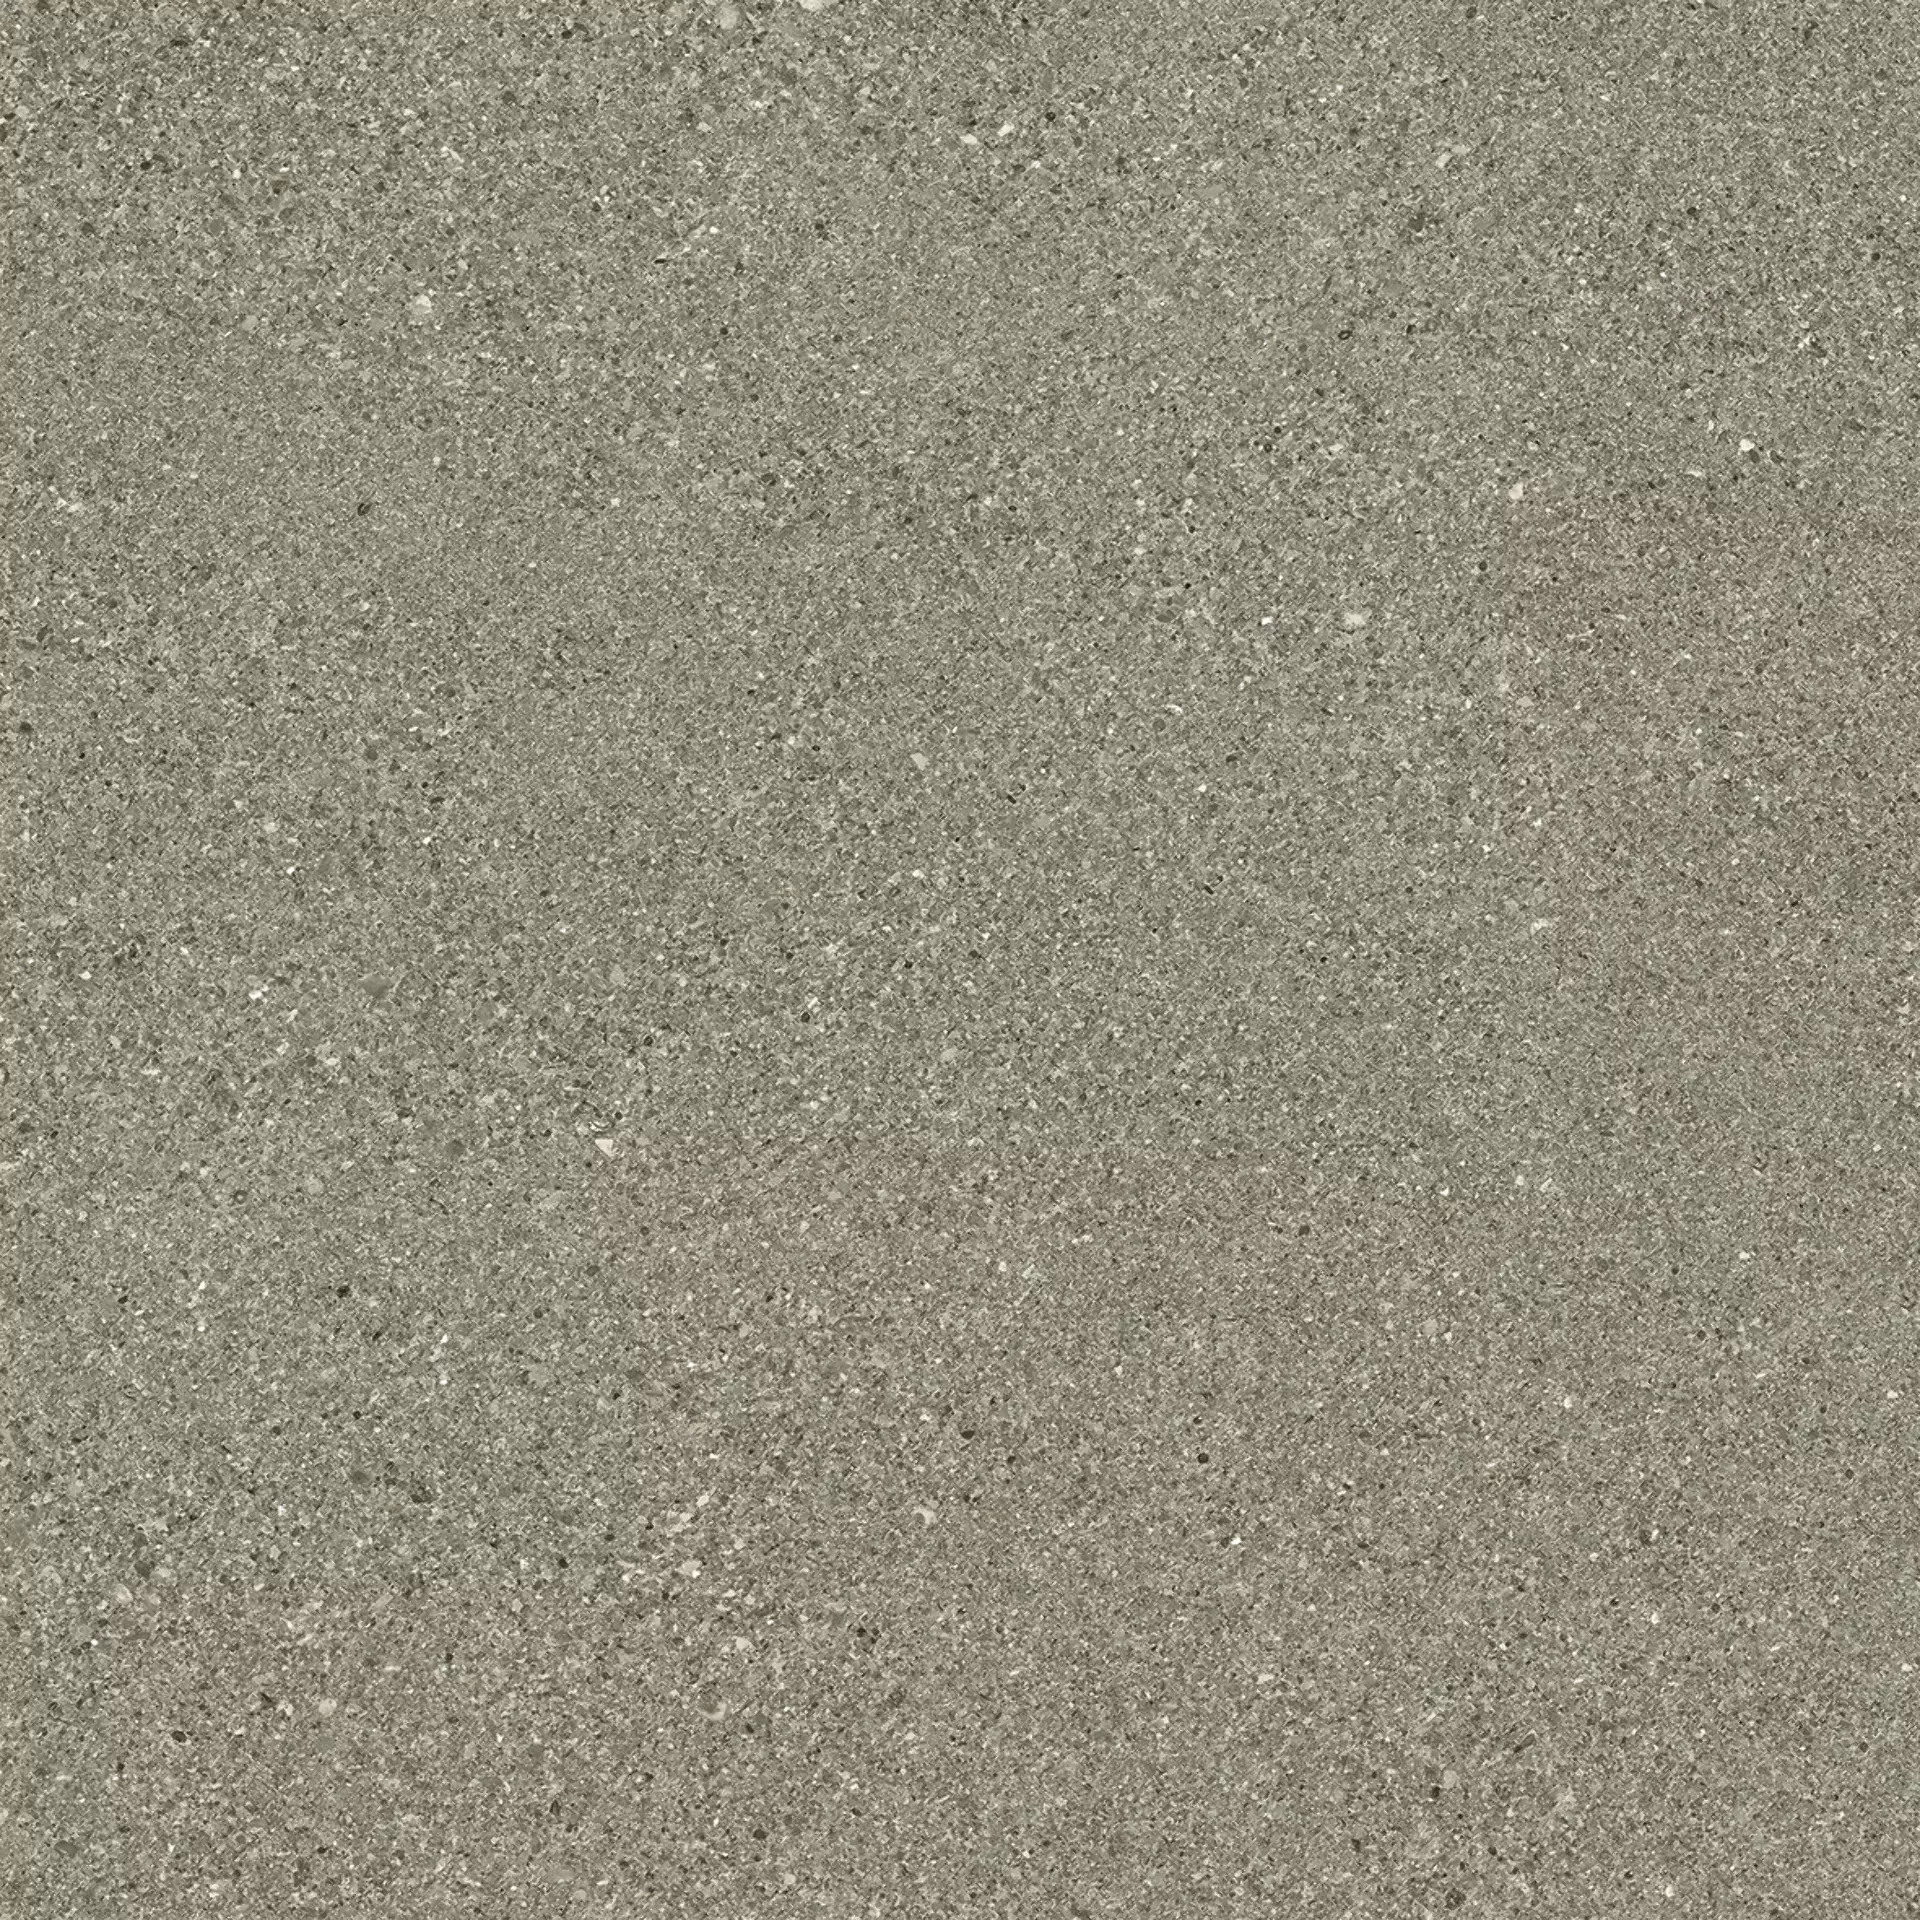 Ergon Grain Stone Fine Grain Taupe Naturale E09N 60x60cm rectified 9,5mm